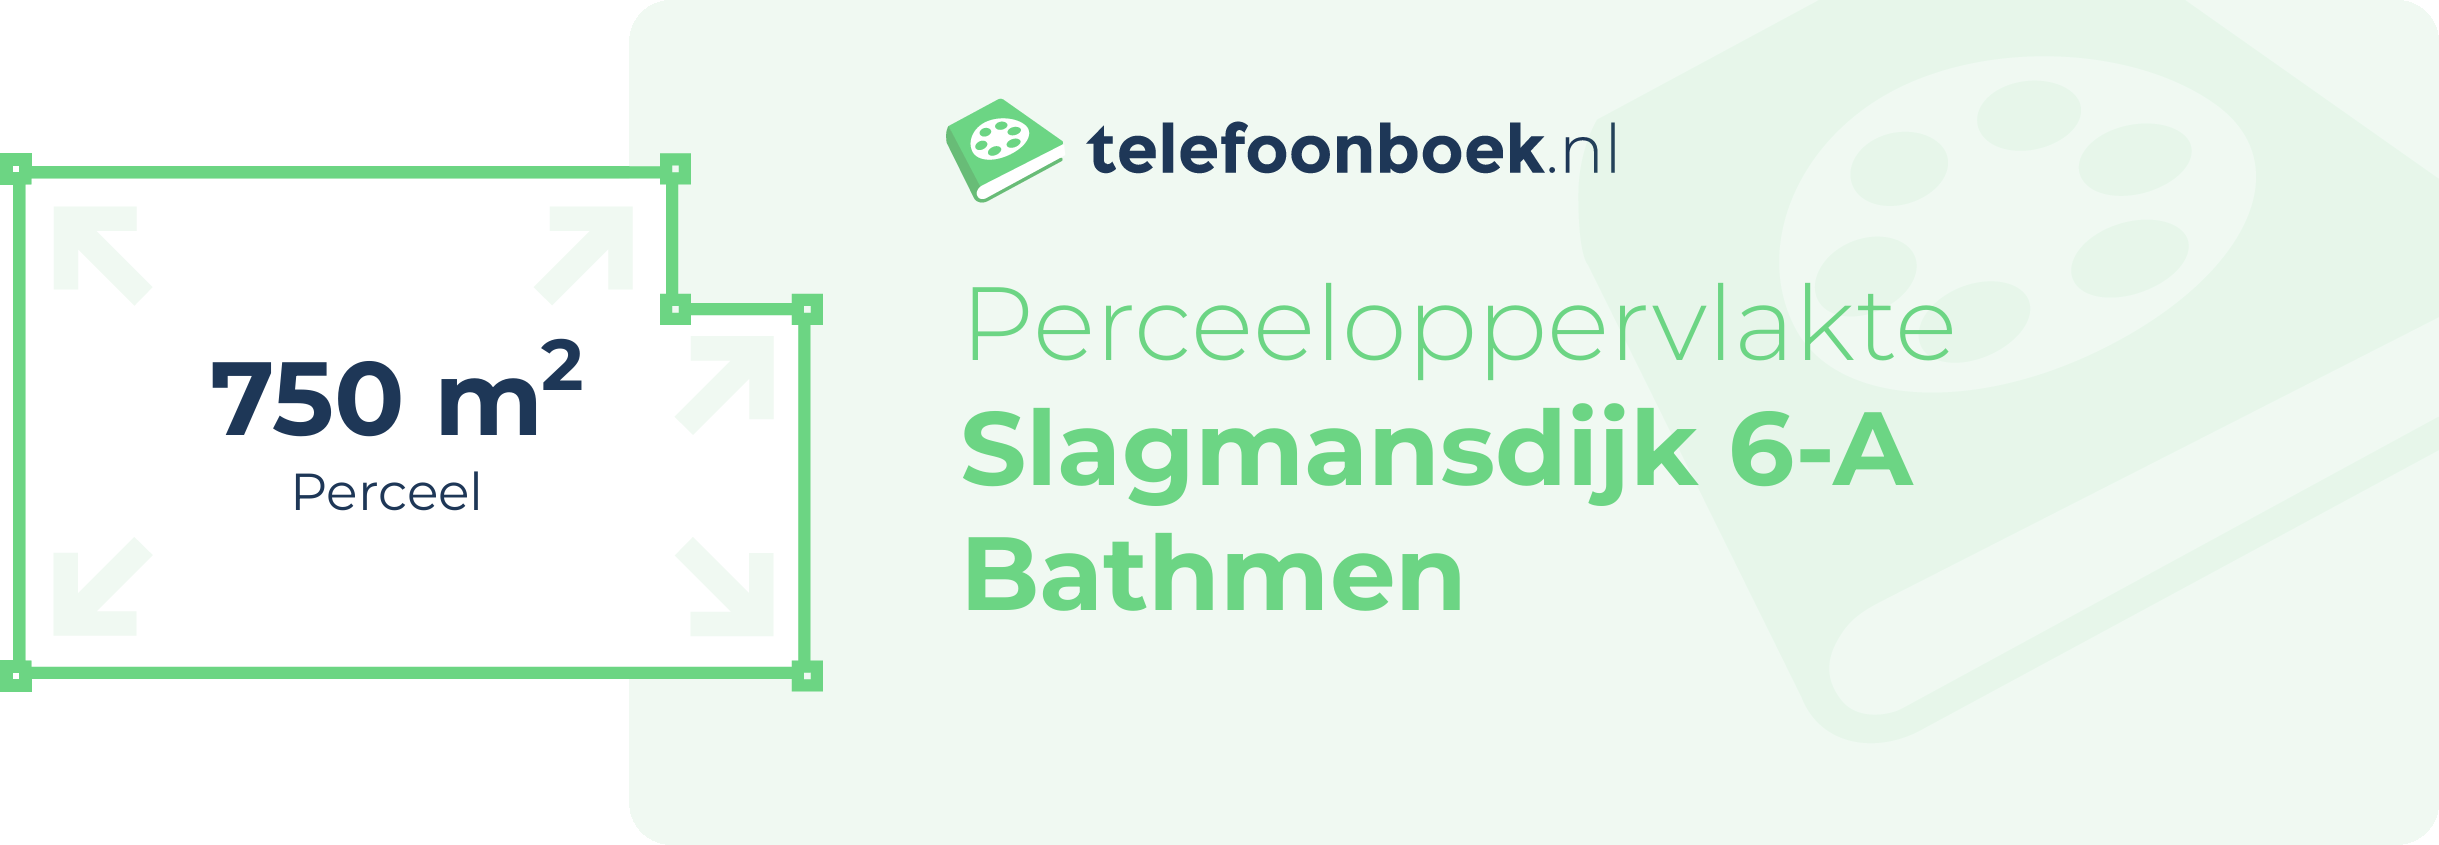 Perceeloppervlakte Slagmansdijk 6-A Bathmen